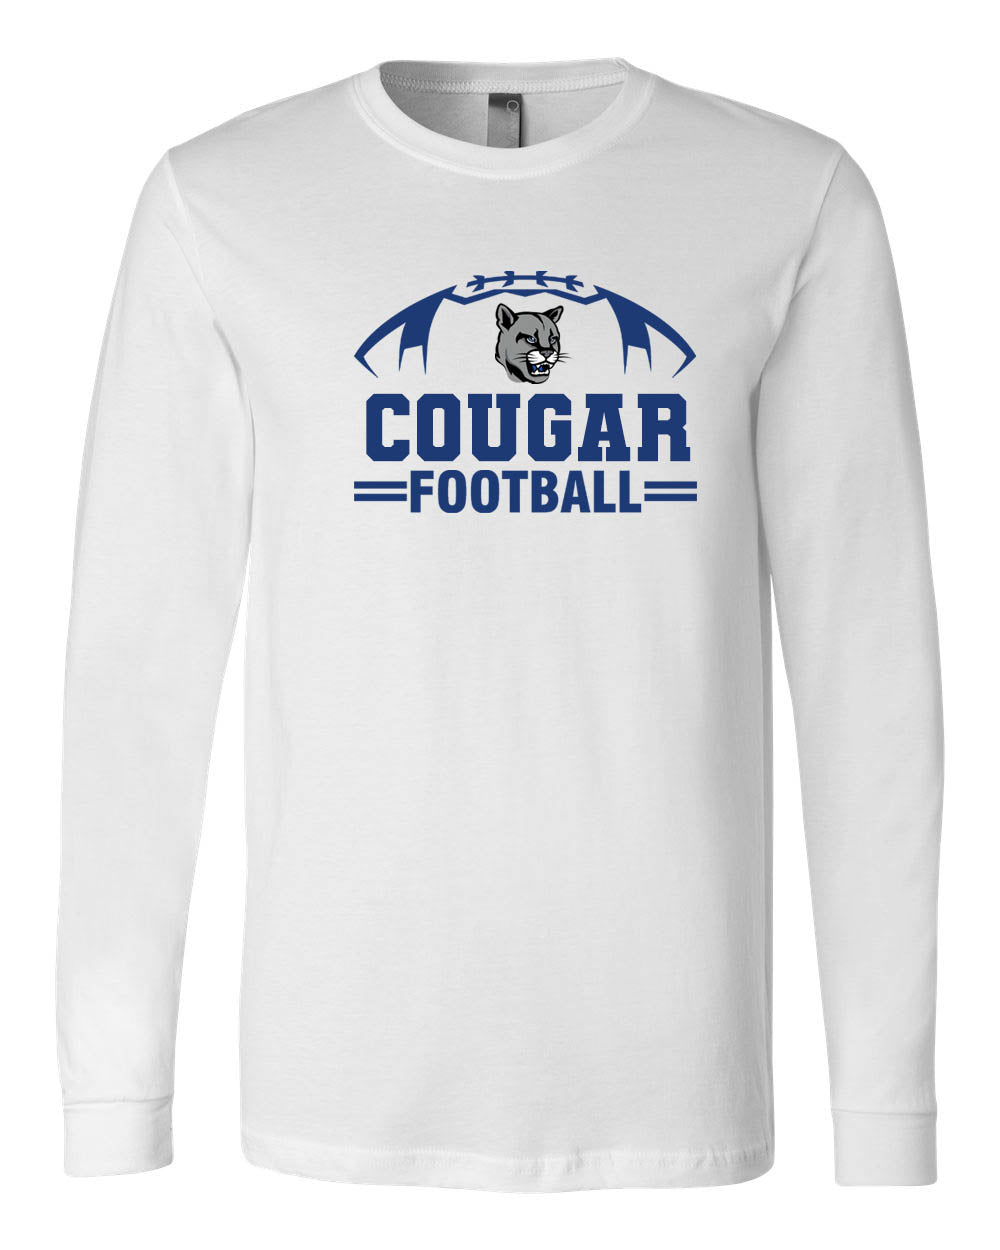 Cougars Football Long Sleeve Shirt